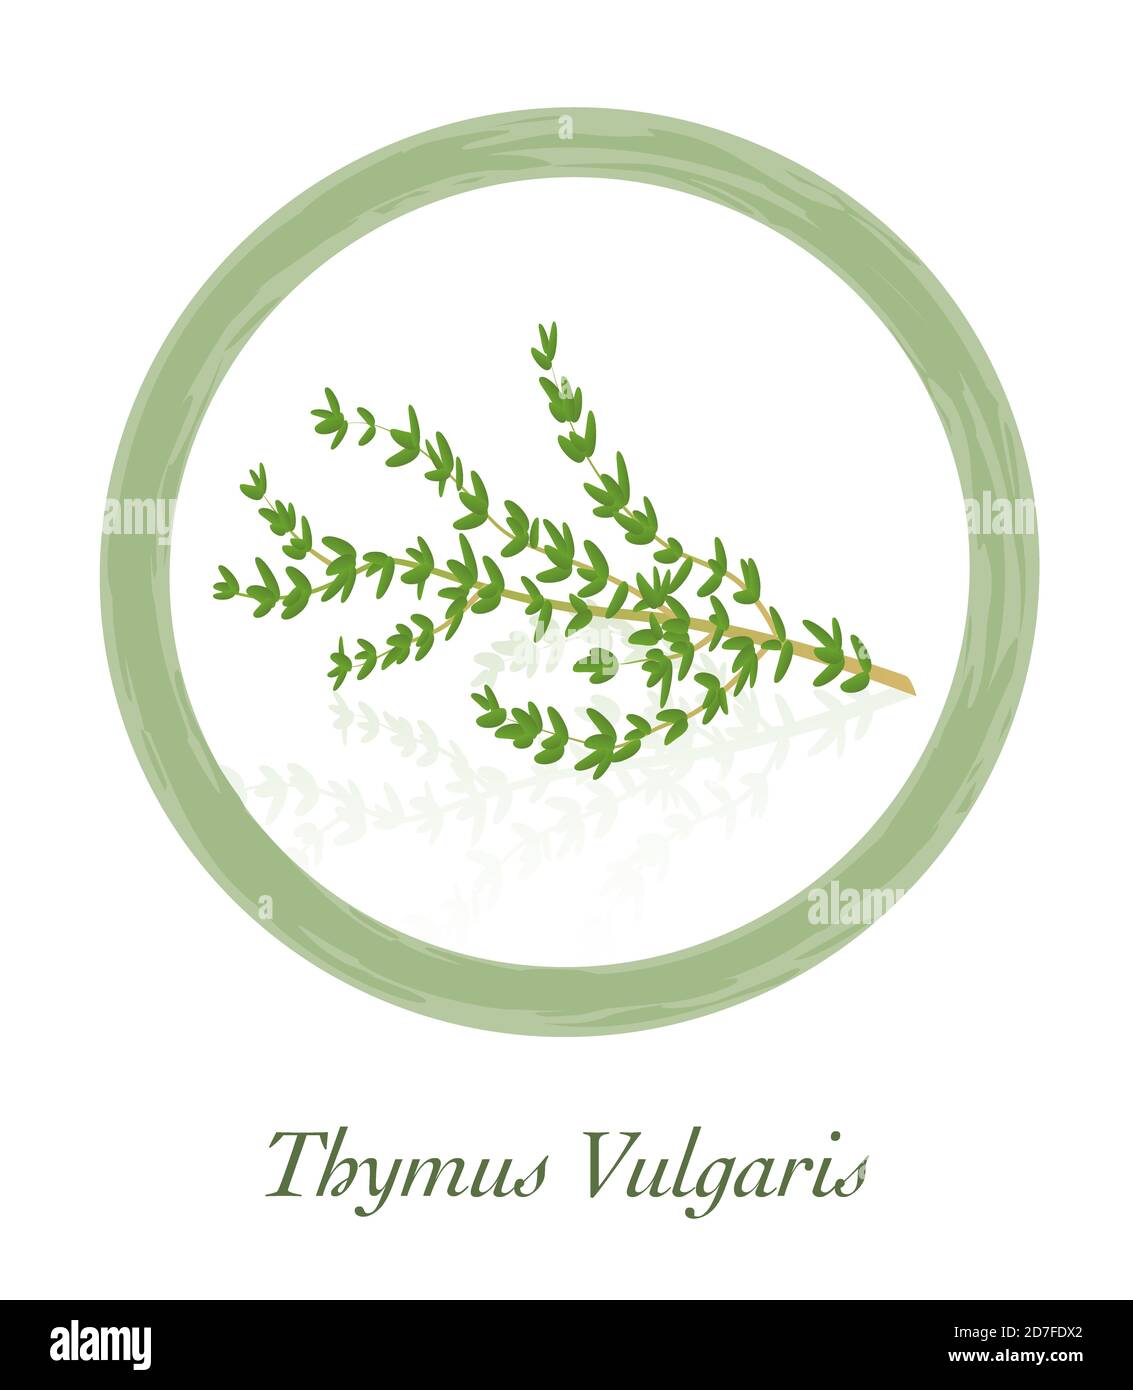 Thym - Thymus vulgaris - logo de l'herbe culinaire - illustration sur fond blanc. Banque D'Images